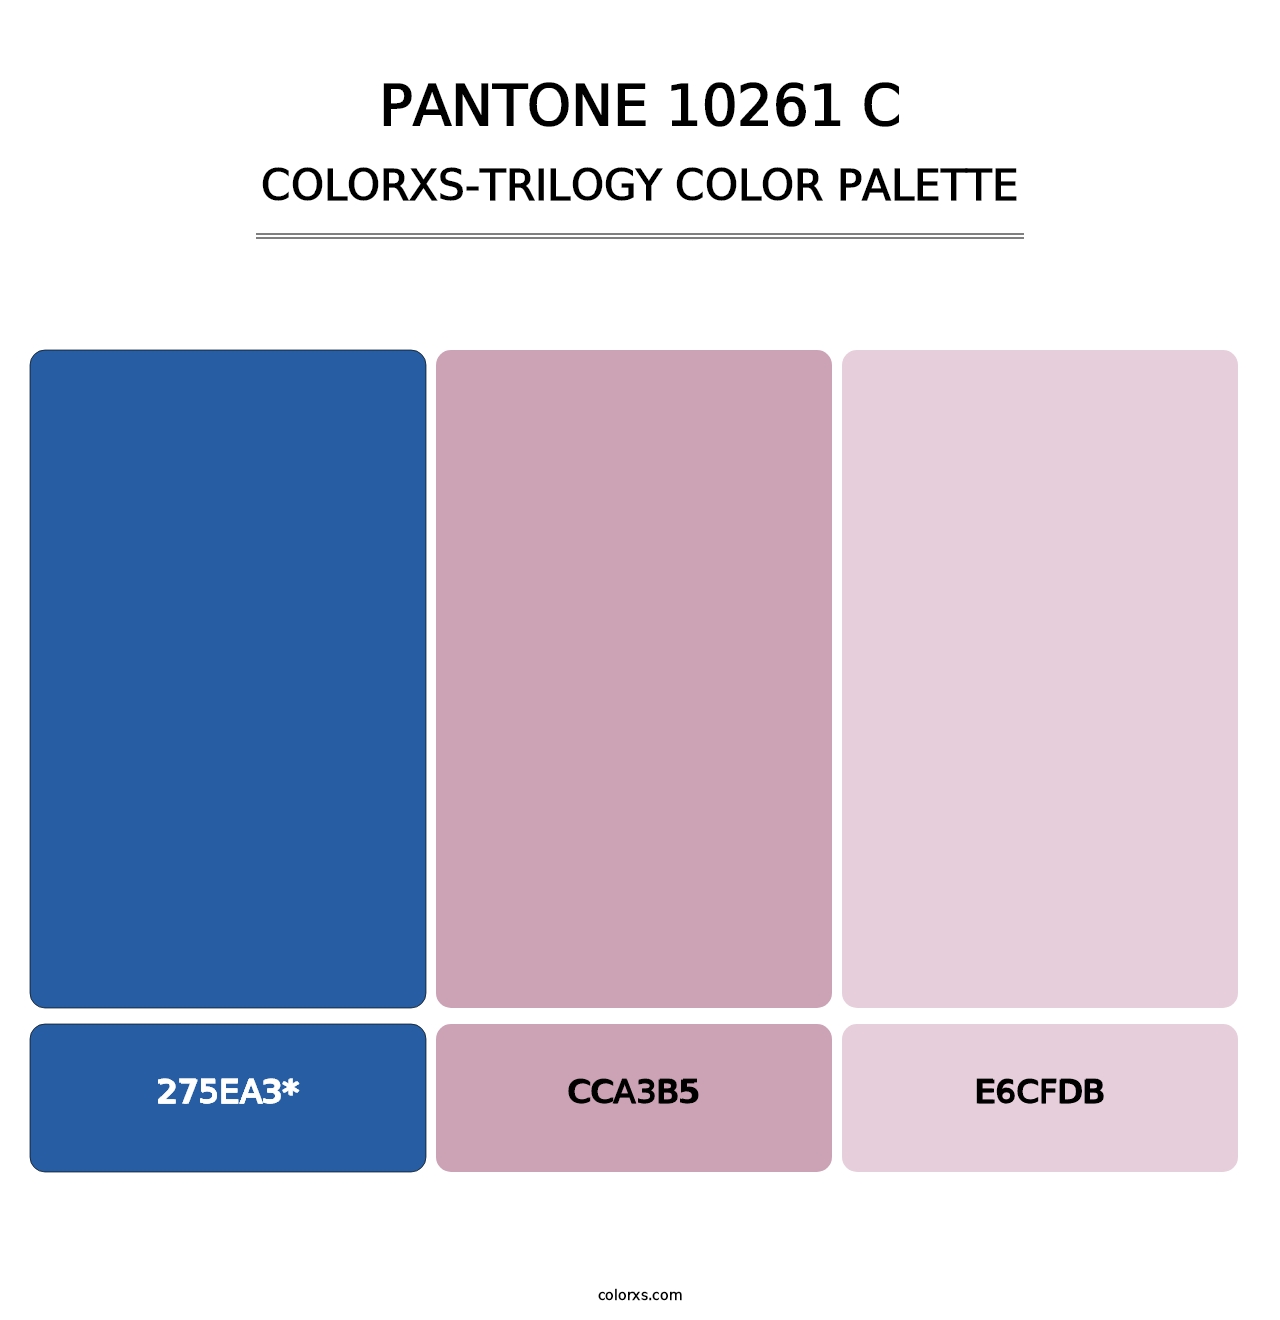 PANTONE 10261 C - Colorxs Trilogy Palette